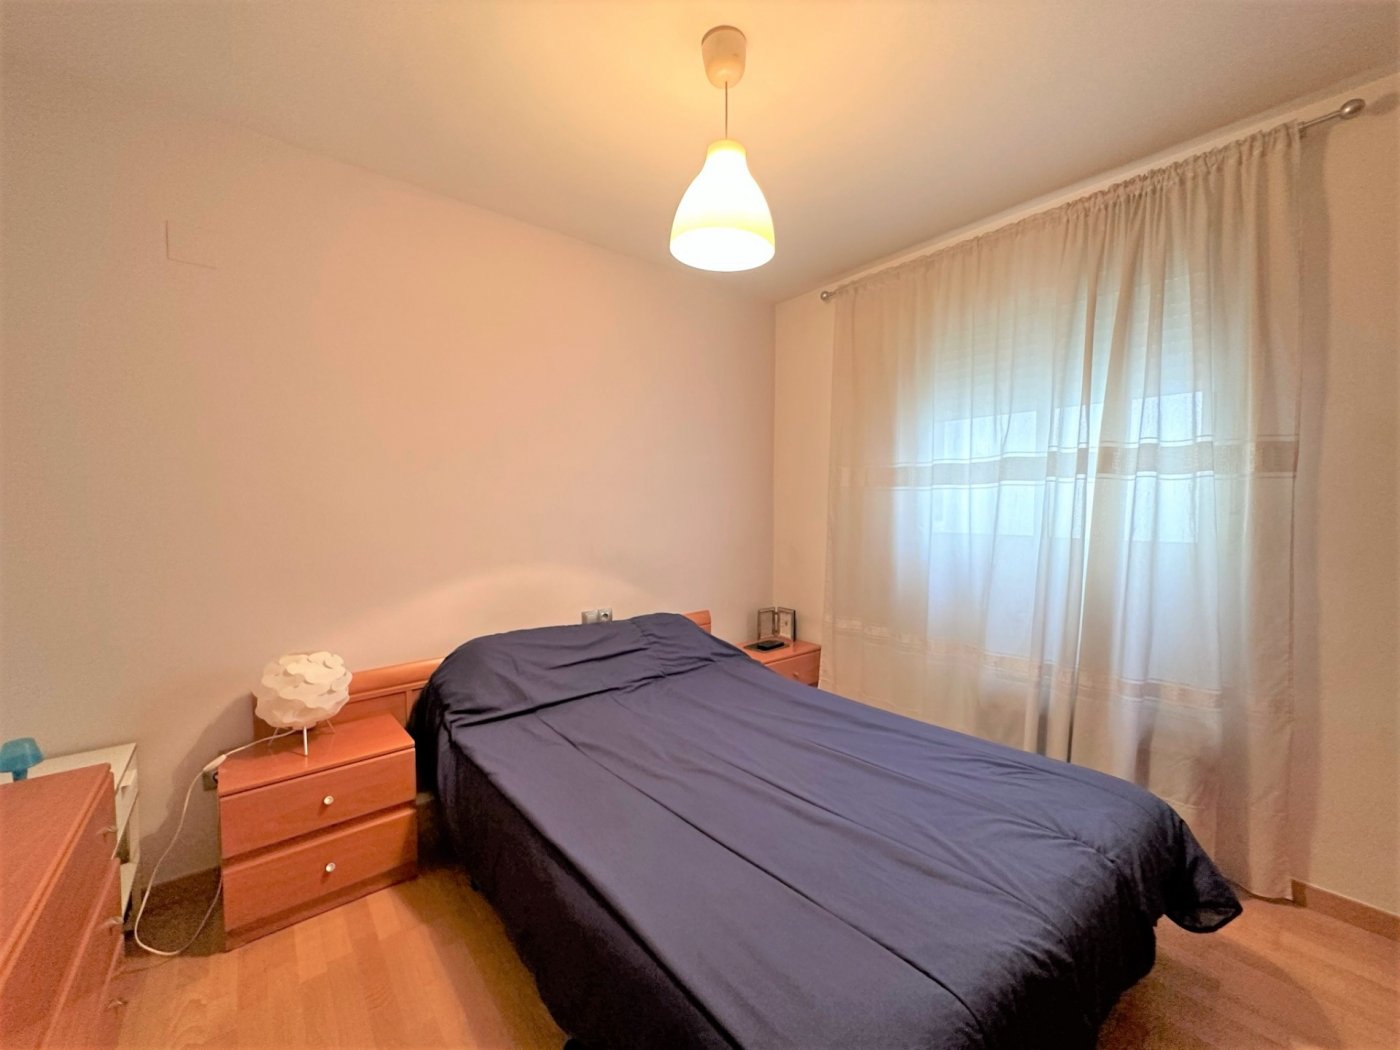 Appartement à Náquera, Valencia avec 3 chambres et 2 salles de bains.